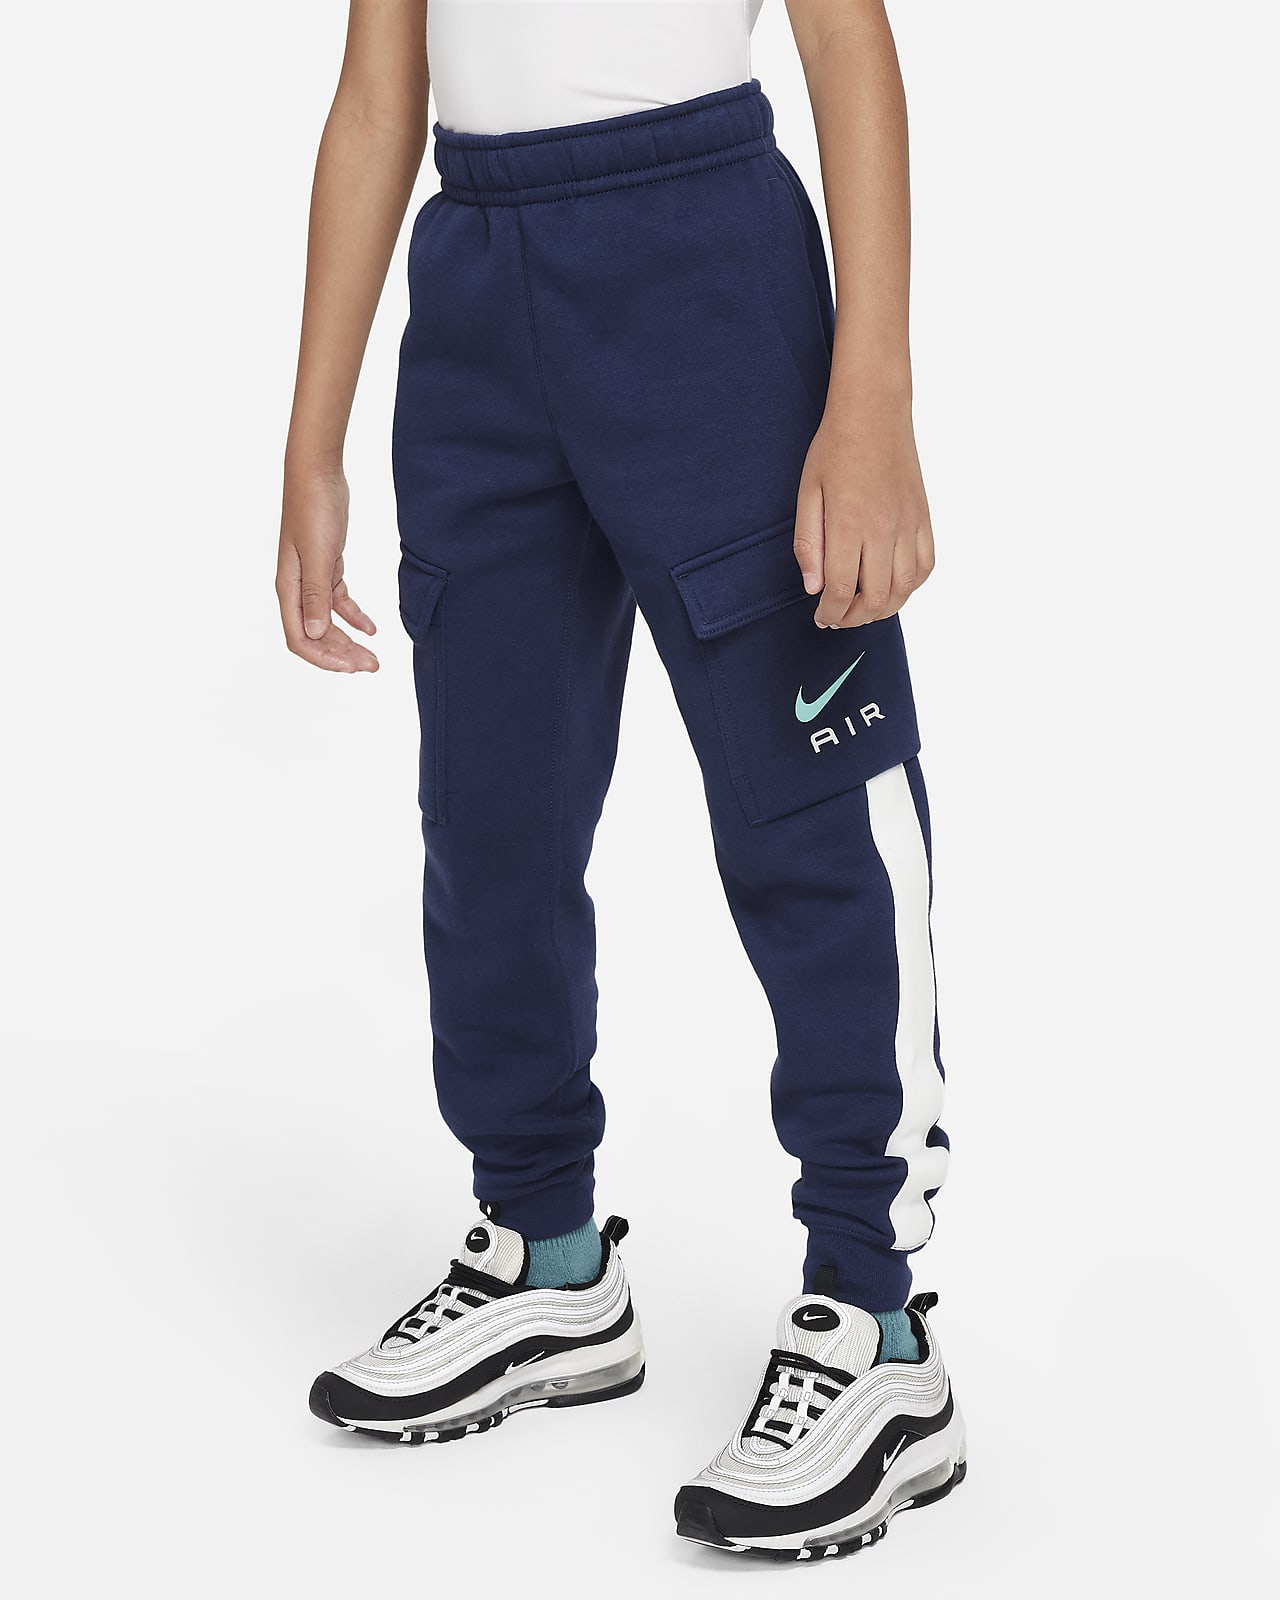 Flísové cargo kalhoty Nike Air pro větší děti